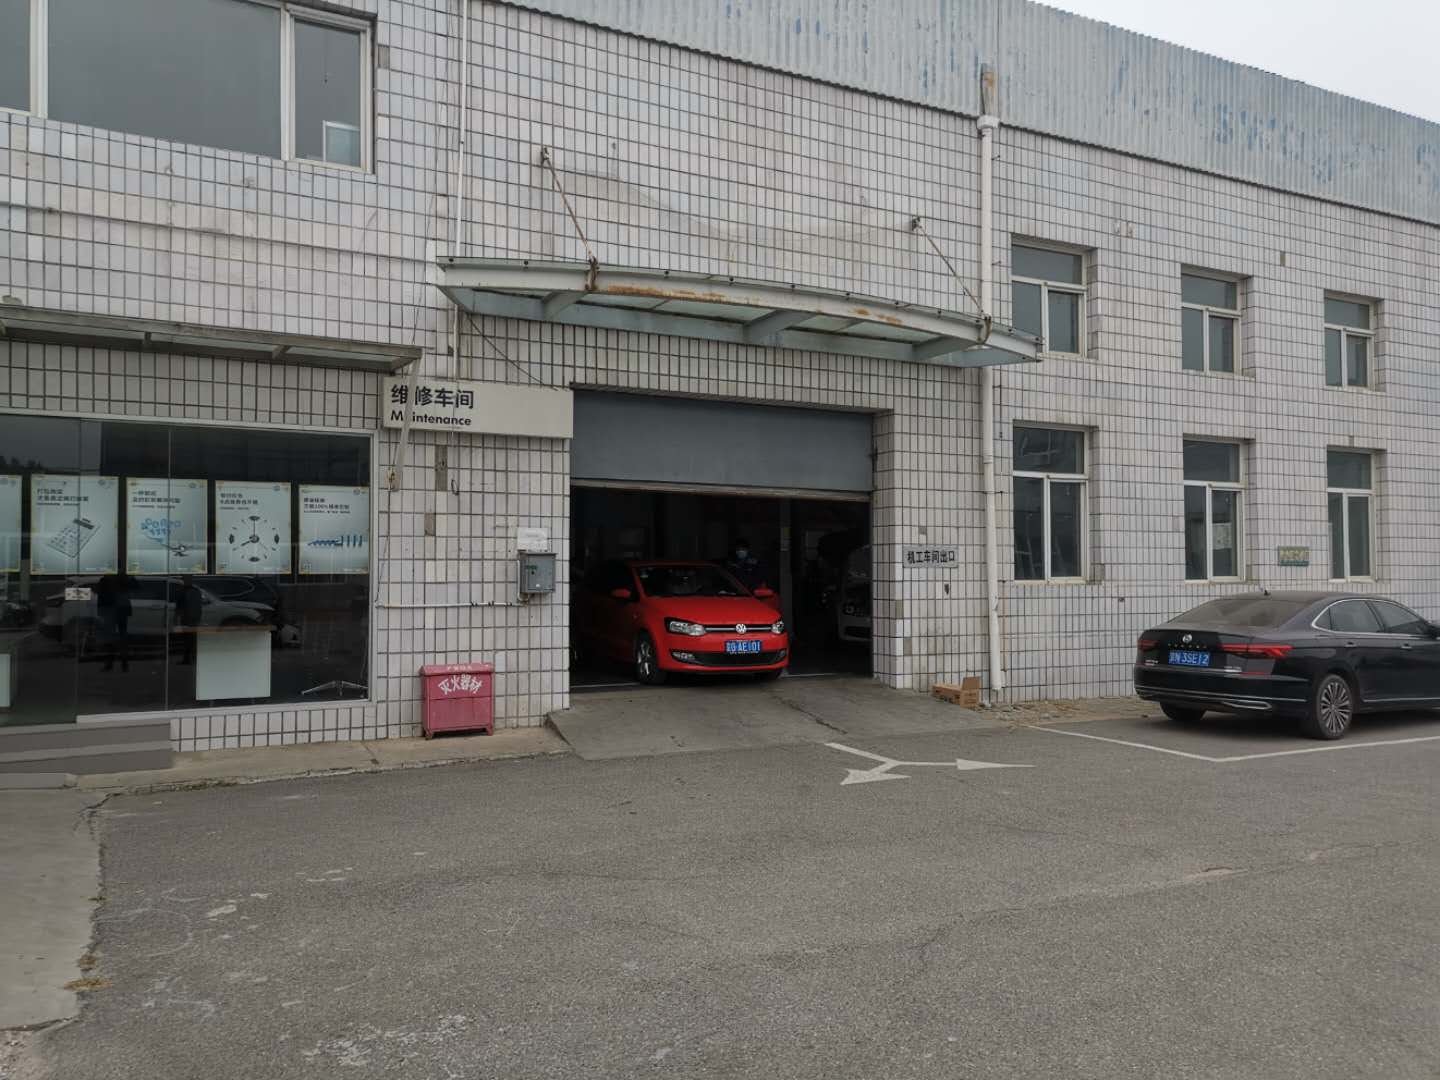 上汽大众北京4s店维修车间内仍有师傅在维修车辆。新京报记者 程亚龙 摄